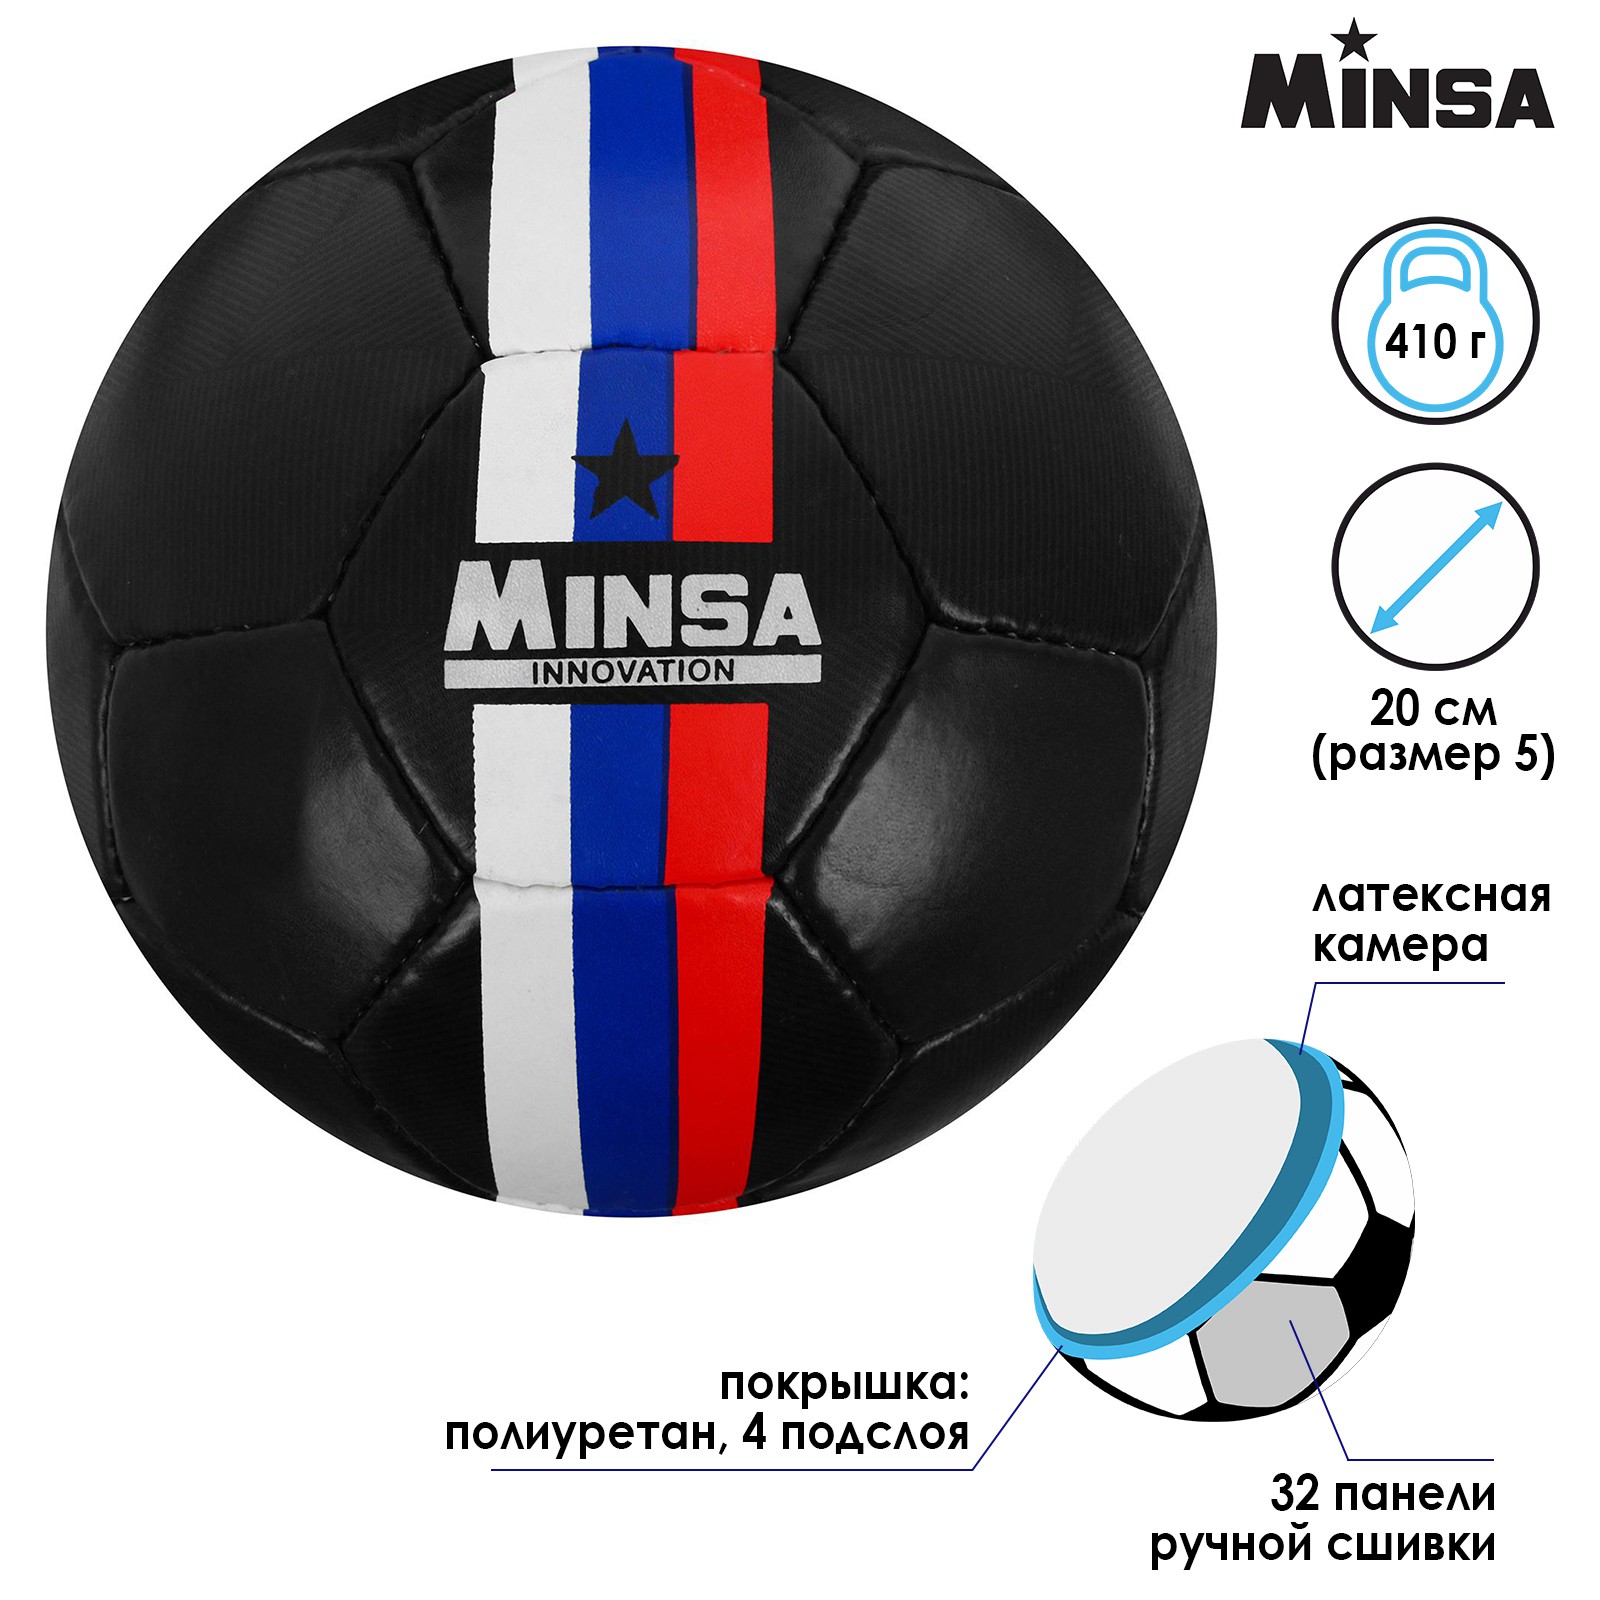 Мяч MINSA футбольный PU. ручная сшивка. 32 панели. размер 5. 410 г - фото 2